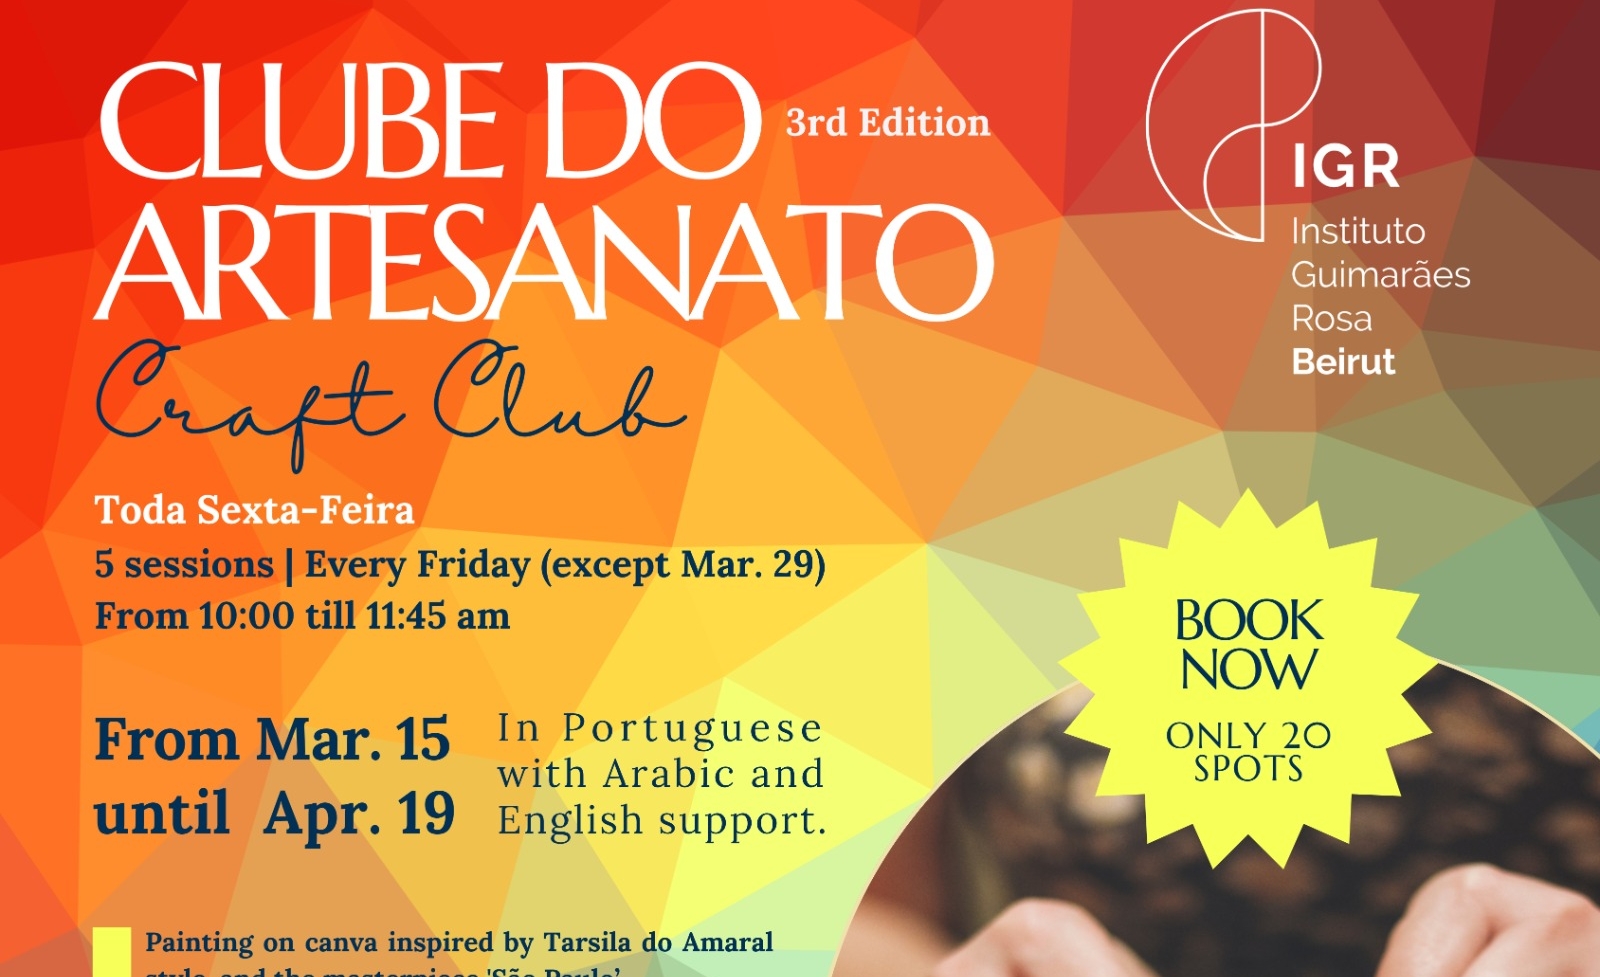 Brazilian Craft Club (Clube do Artesanato) - 3rd edition